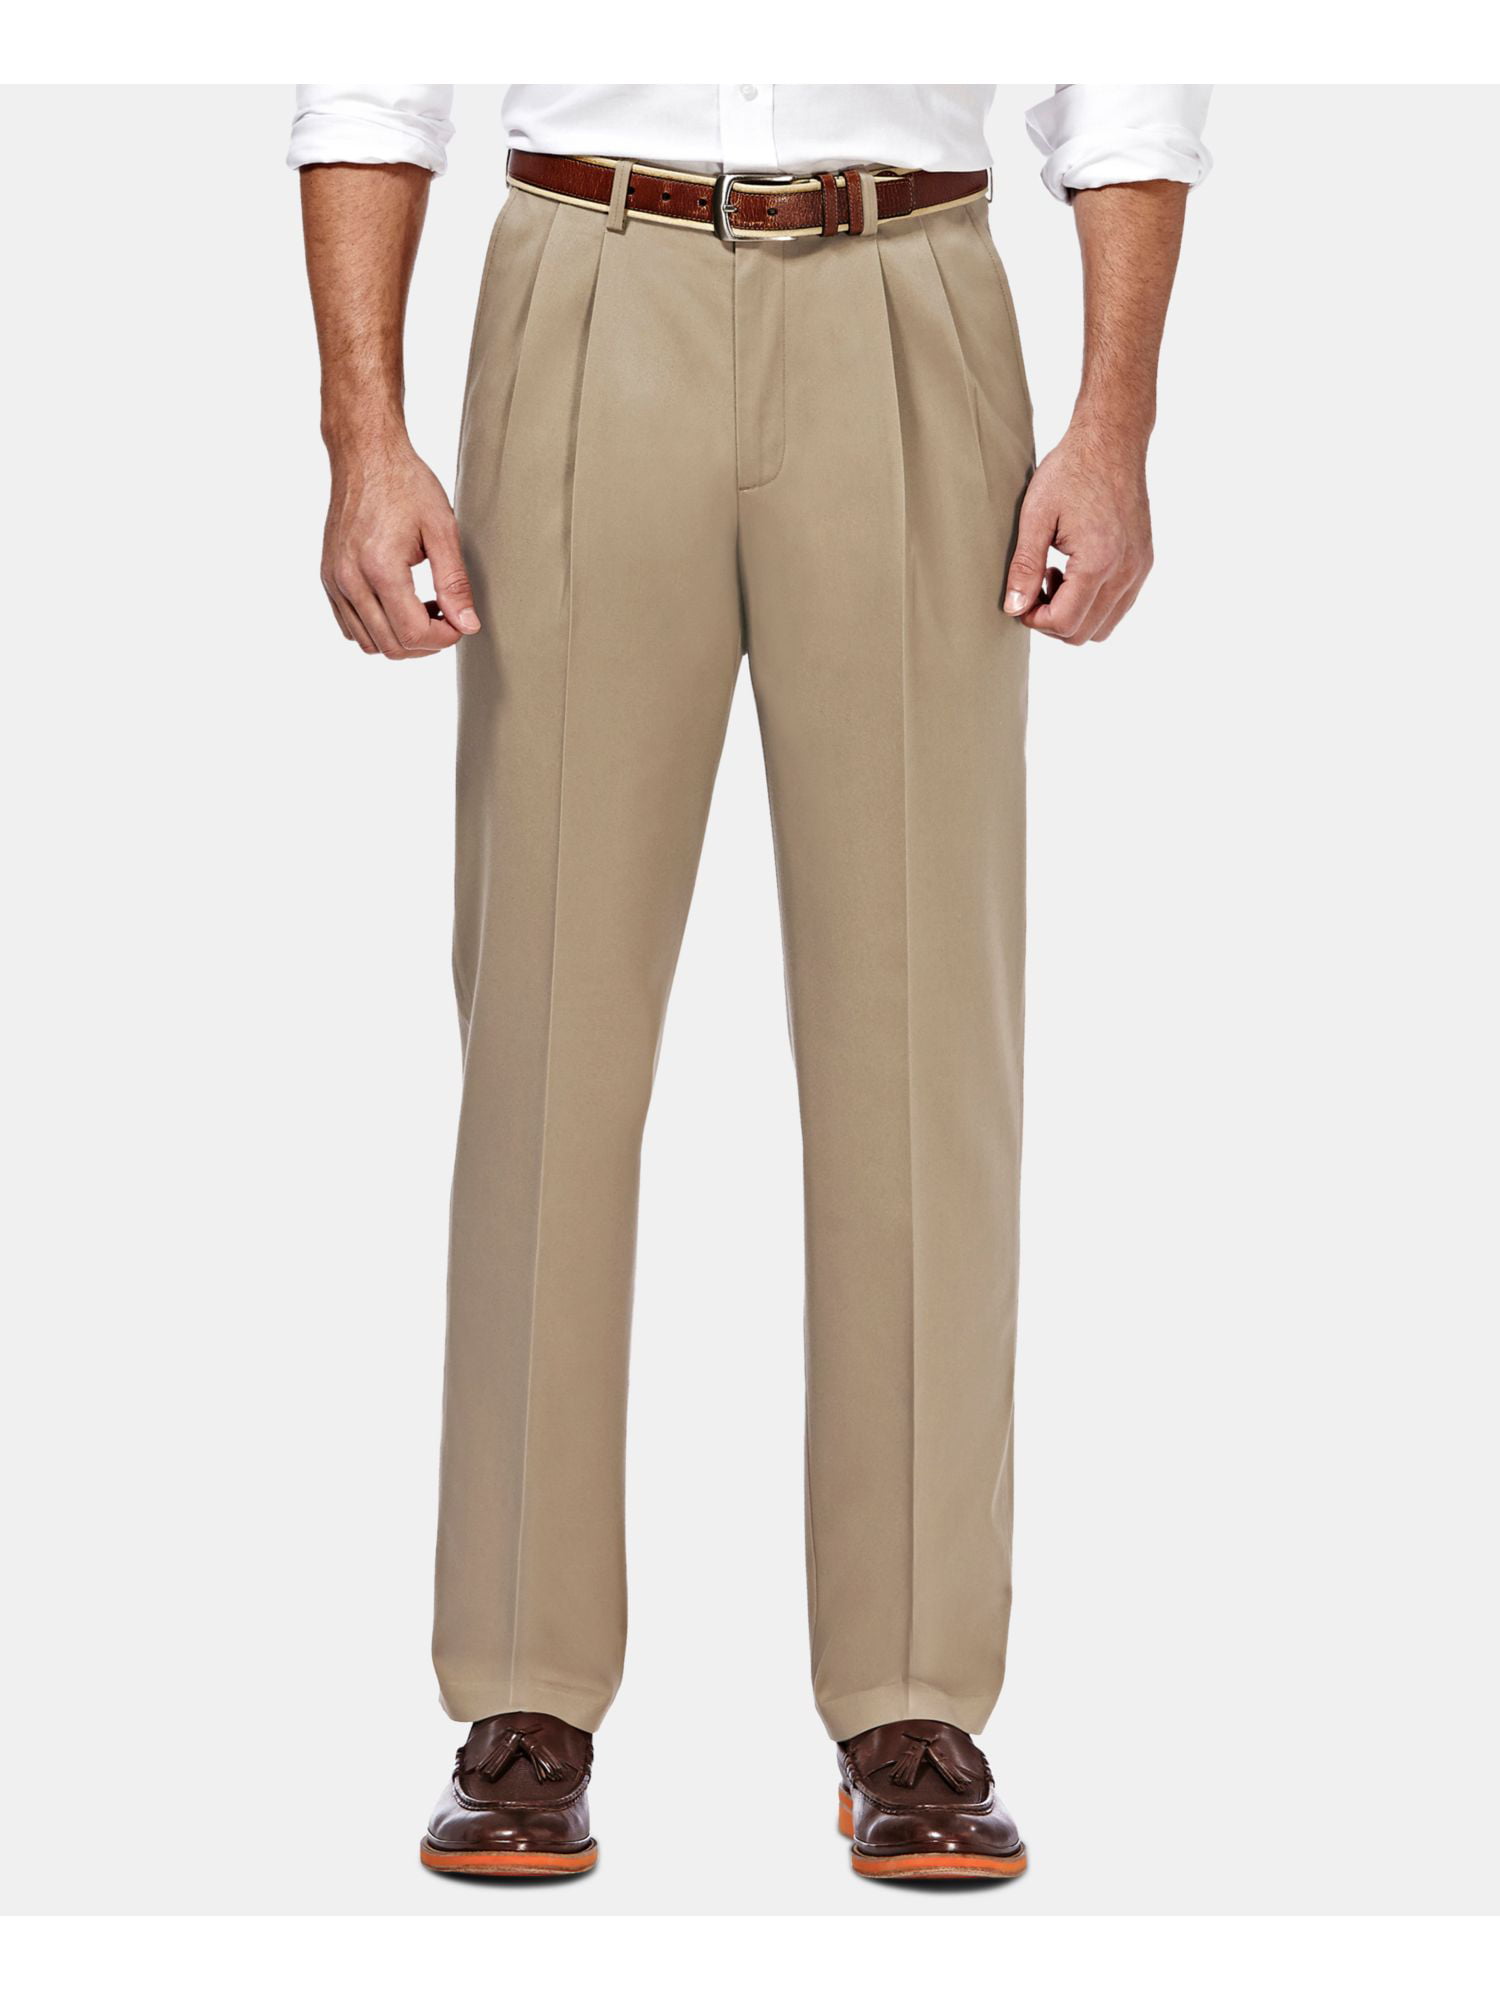 HAGGAR Mens Brown Pants 34W/ 30L - Walmart.com